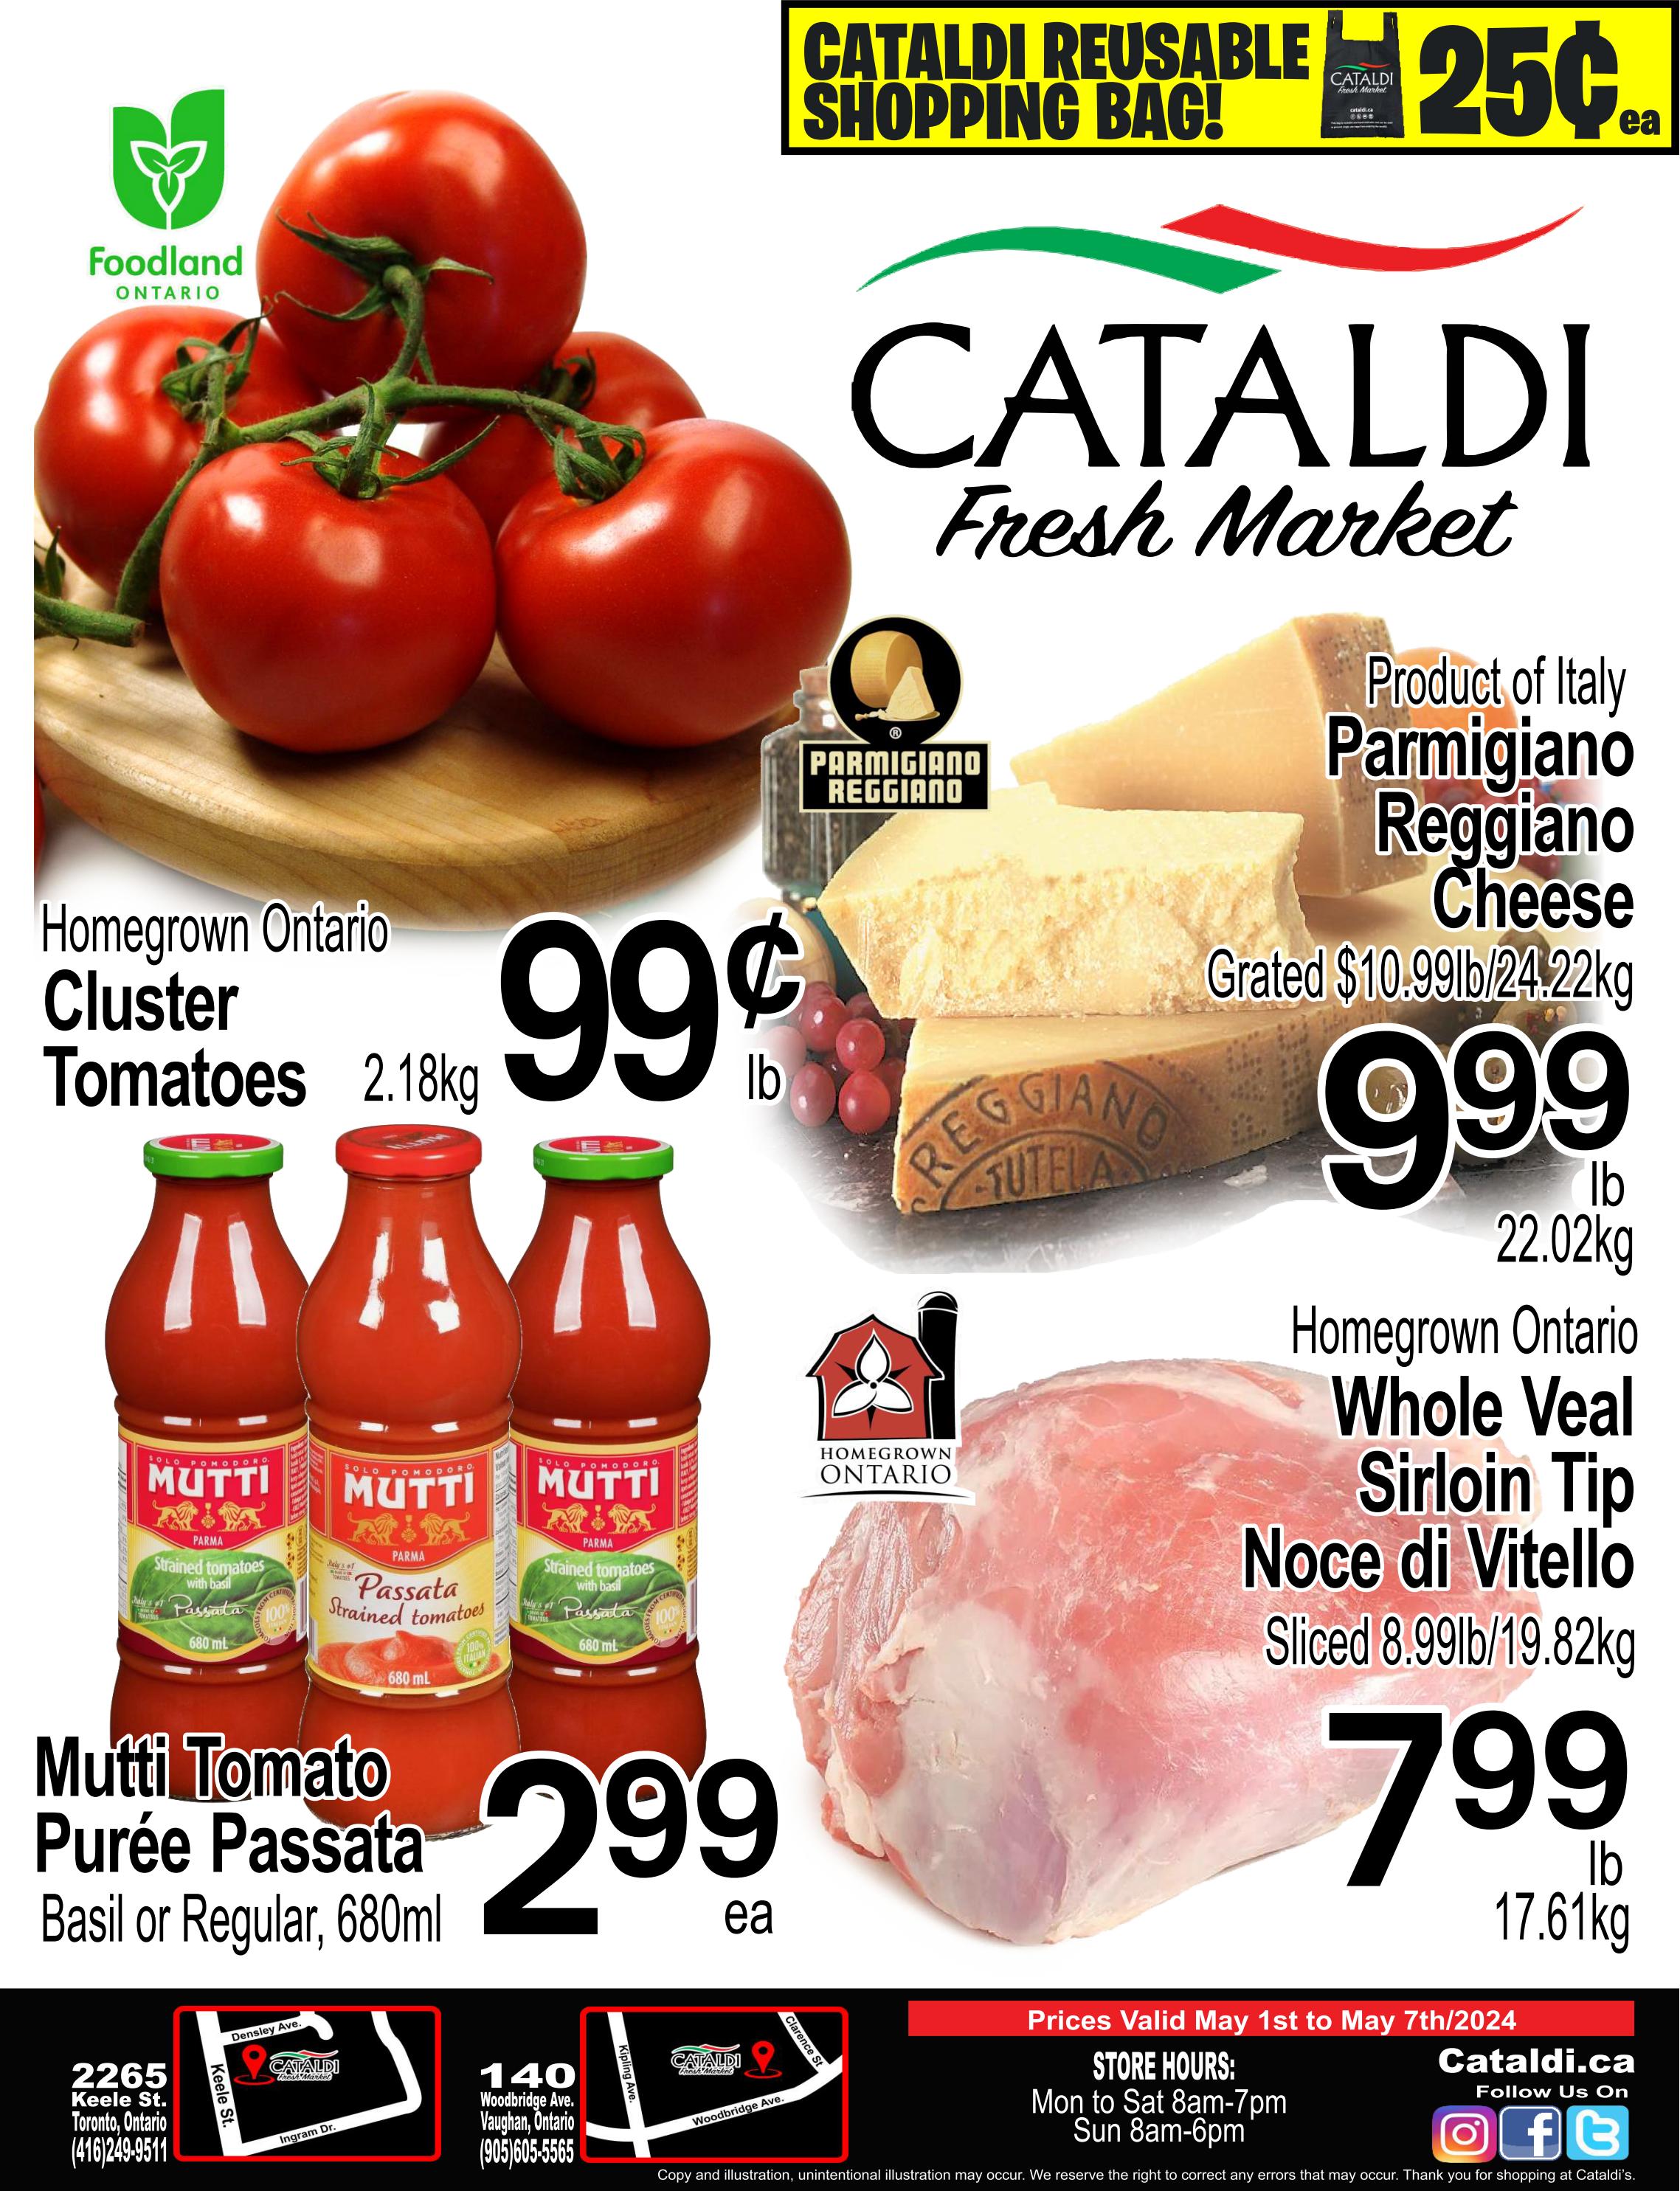 Cataldi - Weekly Flyer Specials